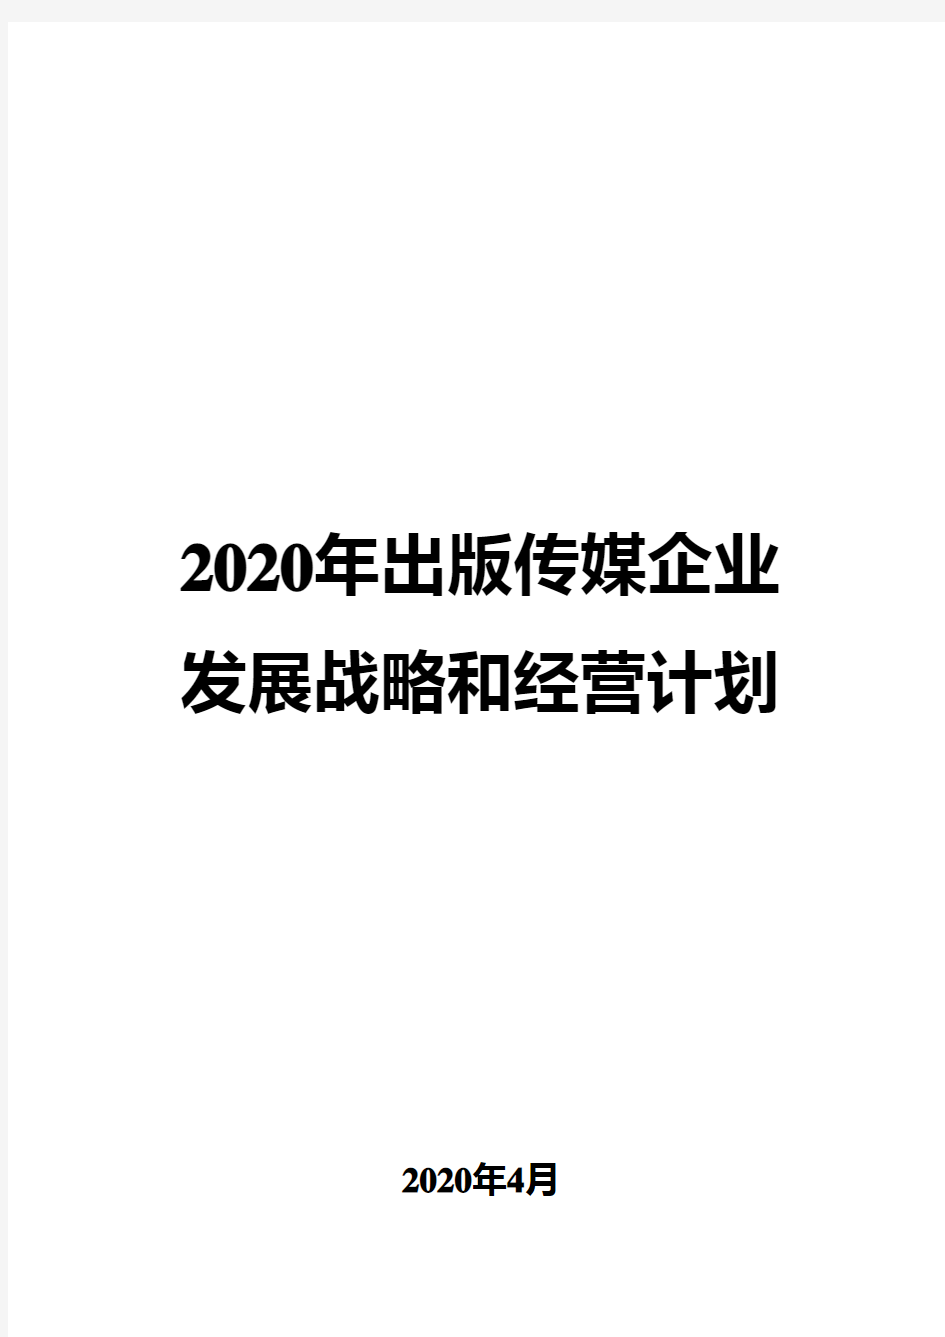 2020年出版传媒公司发展战略和经营计划